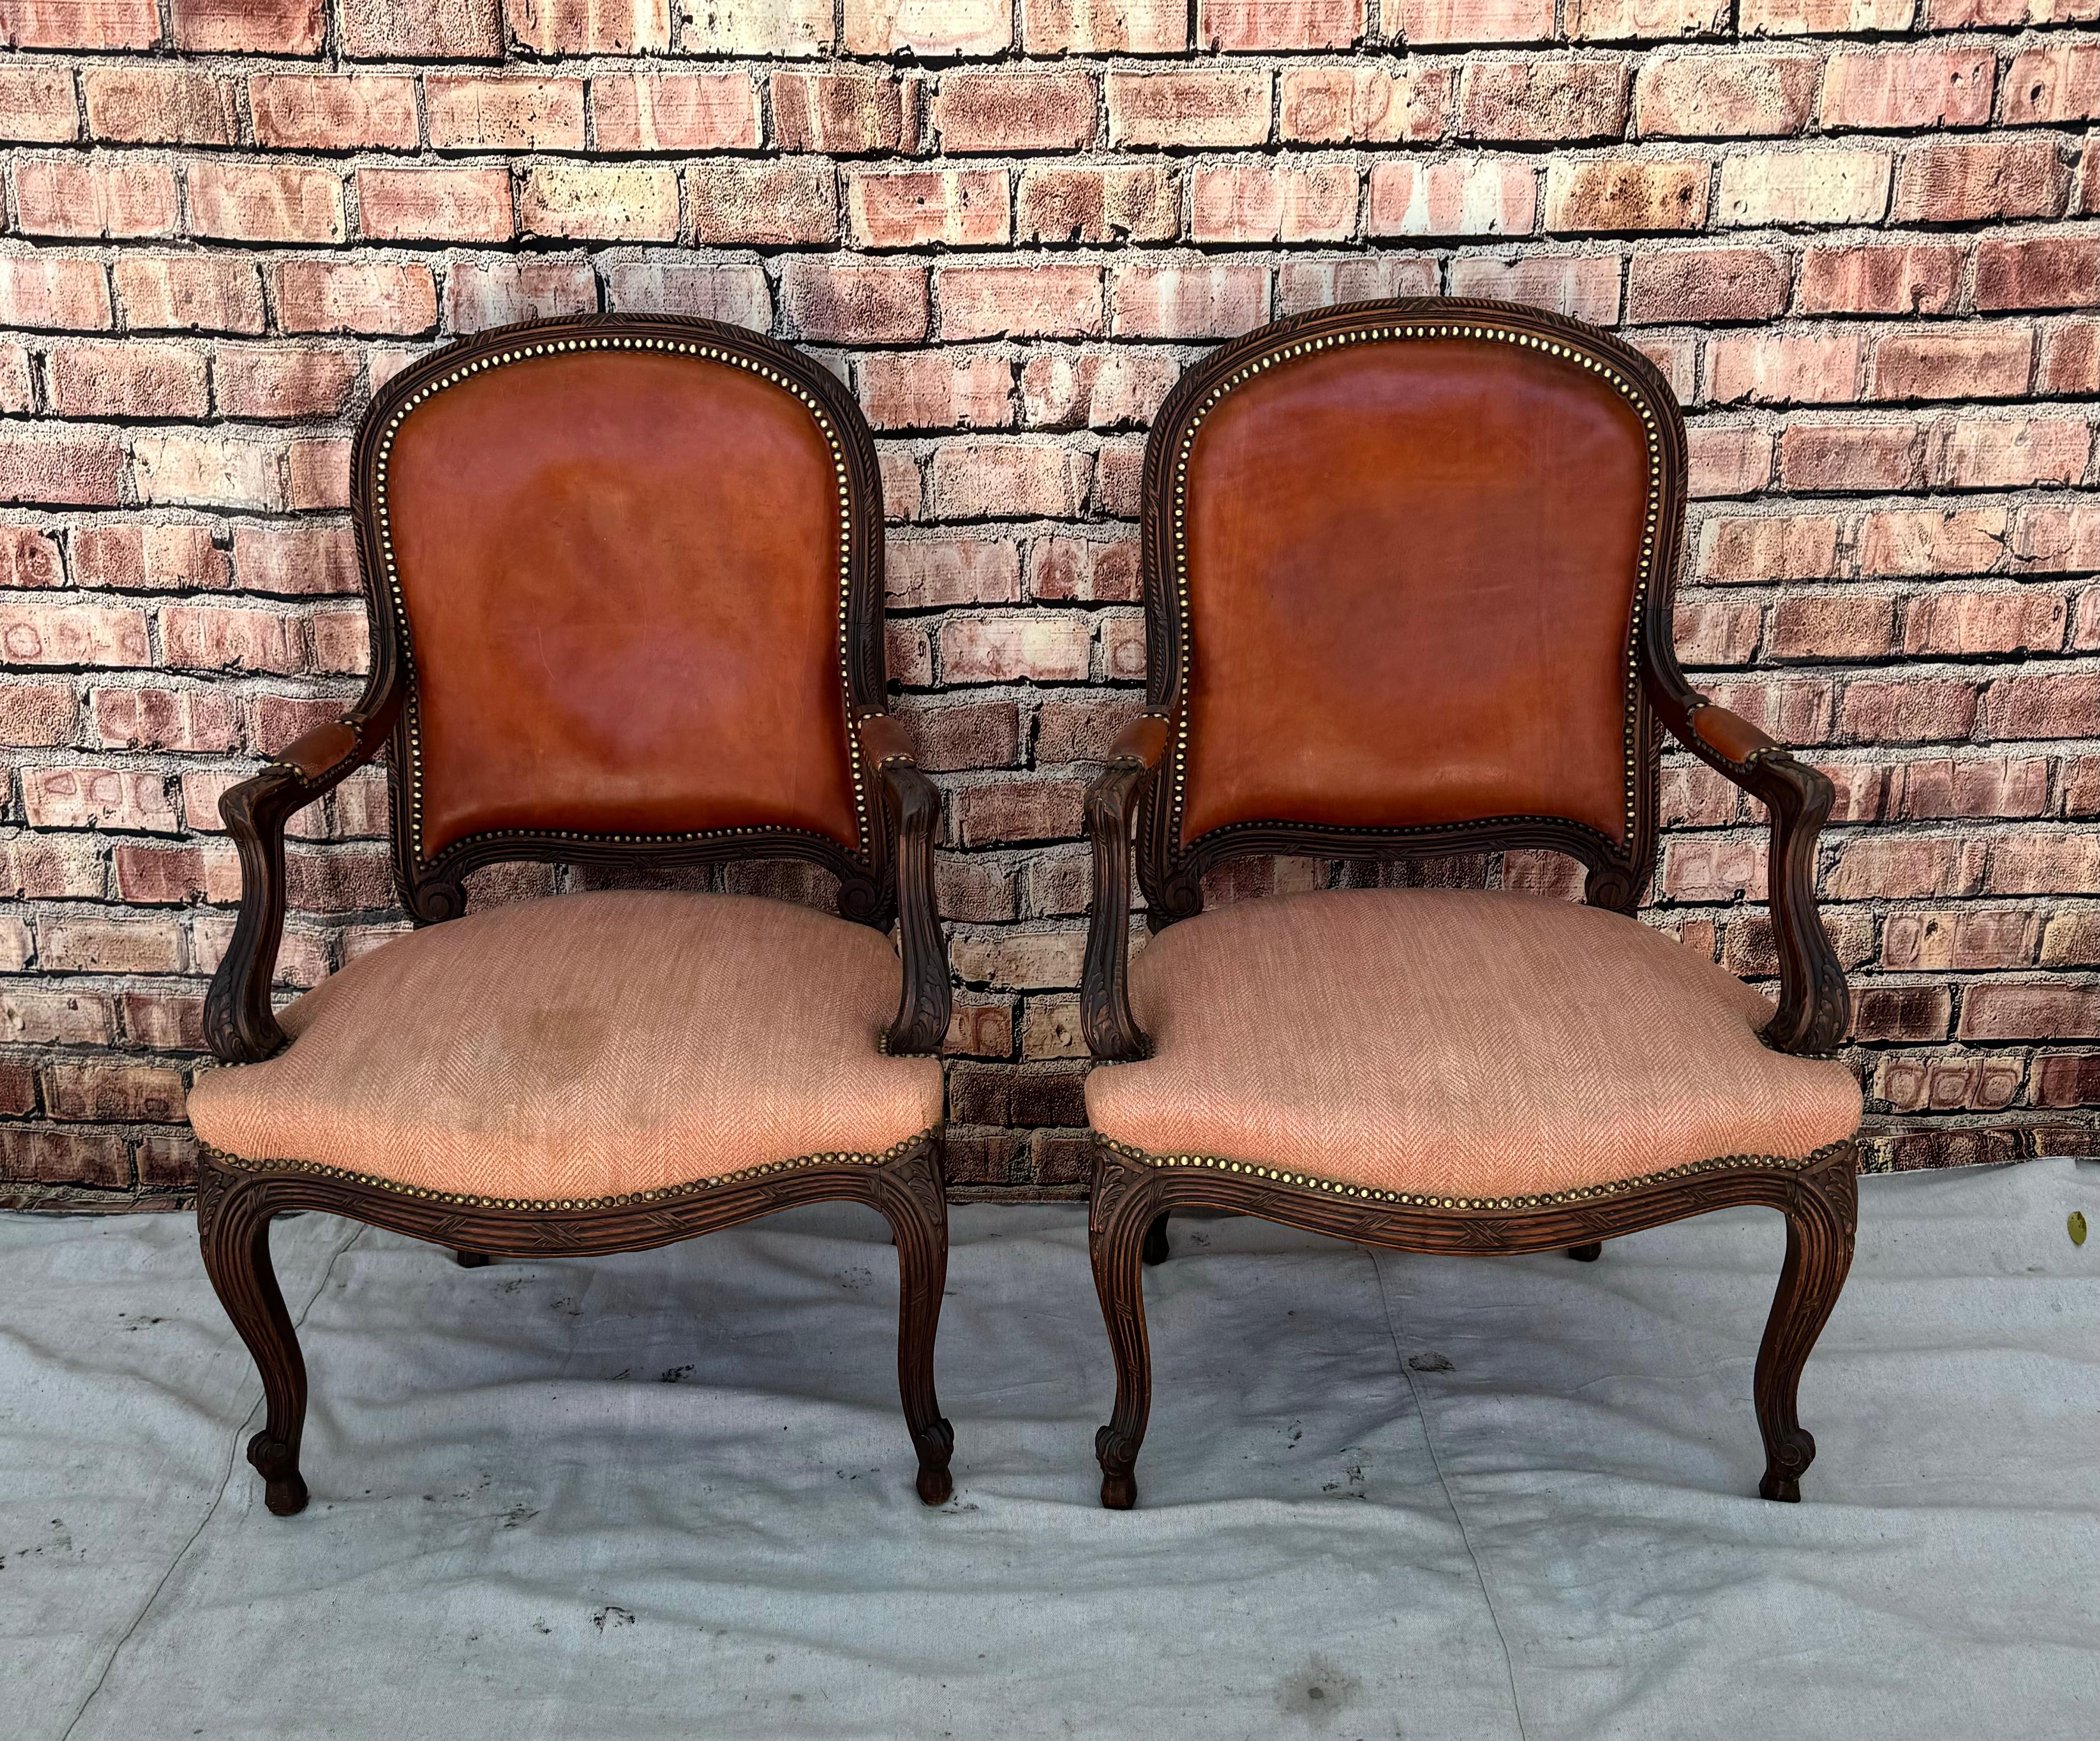 Paar Fauteuil-Sessel im Louis XV-Stil. Die Stühle haben geschnitzte und geformte Nussbaumrahmen, einen schlangenförmigen Sockel und geschnitzte Cabriole-Beine. Die Stühle sind mit roten Lederrückenlehnen und Armlehnen ausgestattet und haben